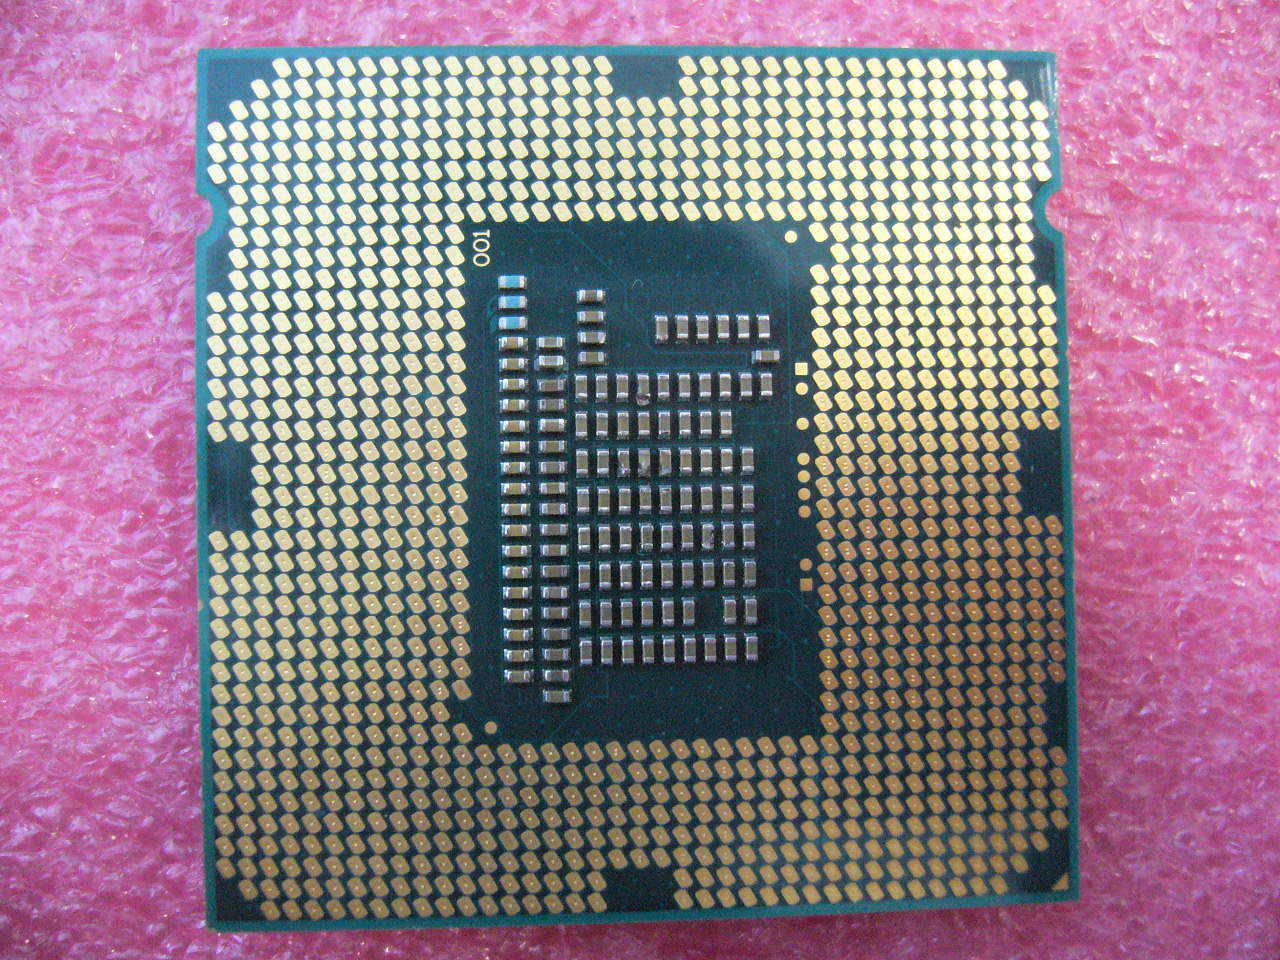 QTY 1x INTEL Pentium CPU G2020 2.9GHZ/3MB LGA1155 SR10H - Click Image to Close